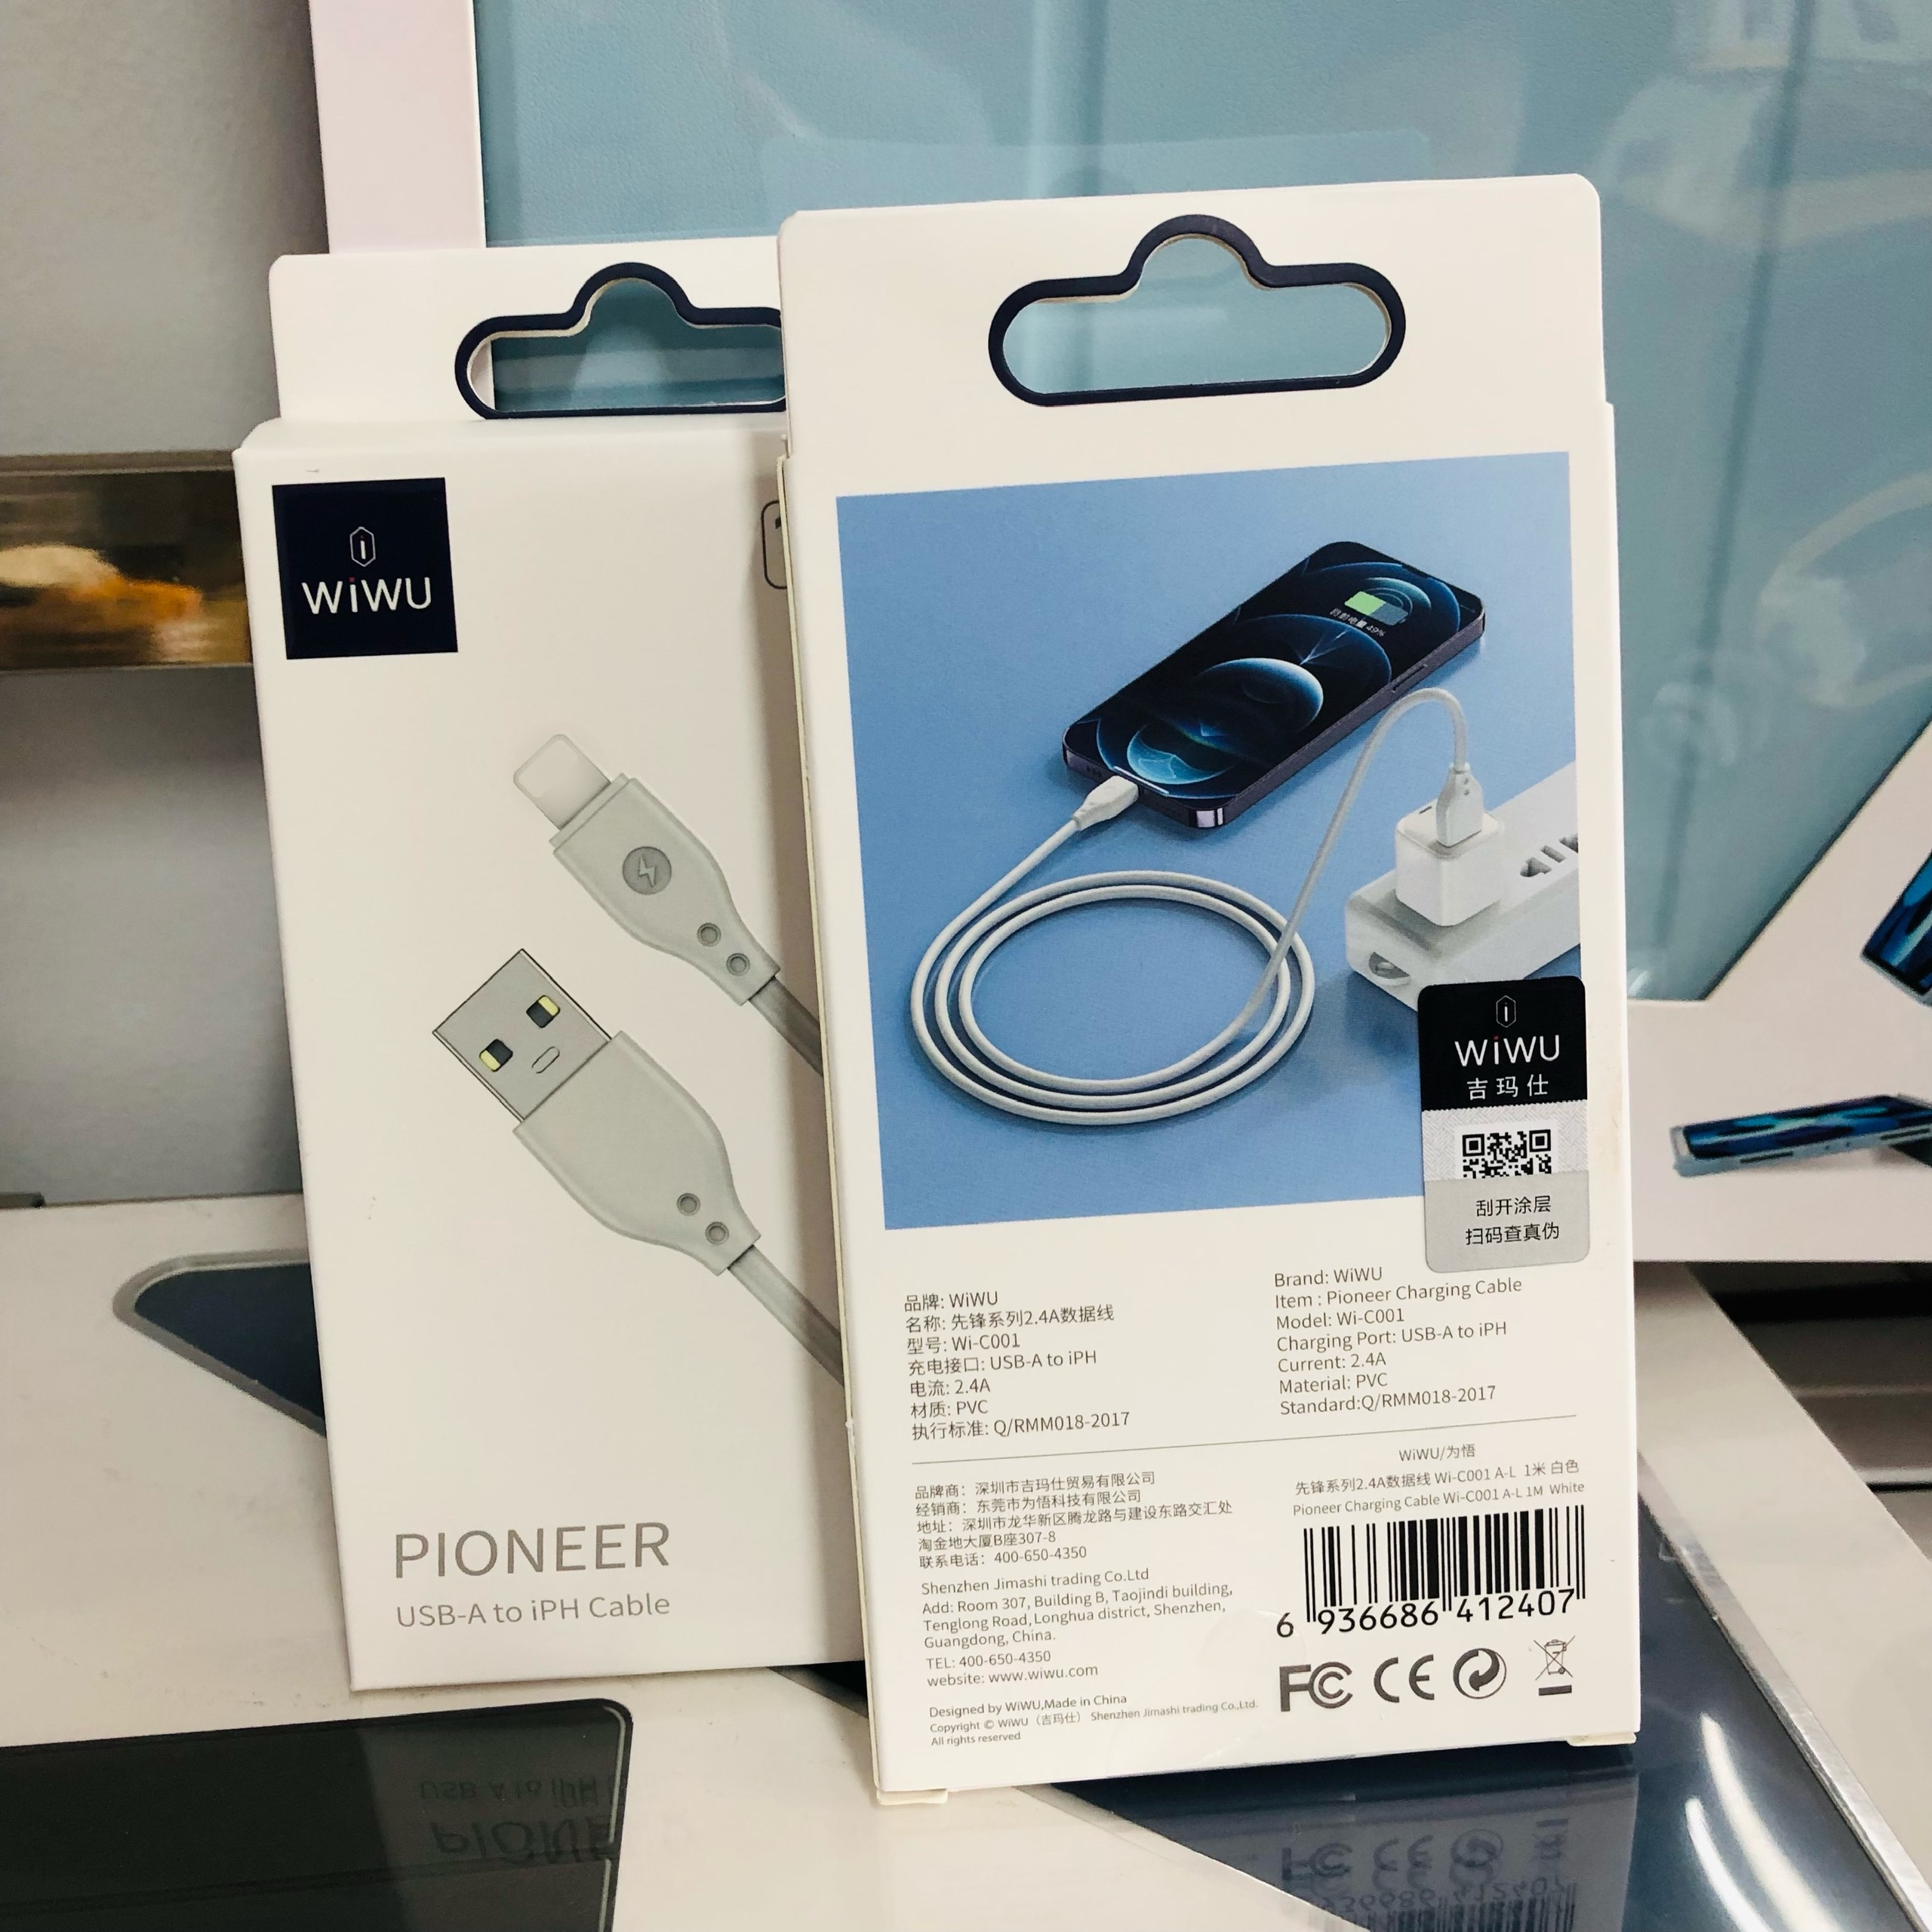 Cáp sạc Wiwu Pioneer Wi-C001  cho điện thoại thông minh USB to Ip hỗ trợ sạc nhanh, bảo vệ an toàn sạc - Hàng chính hãng